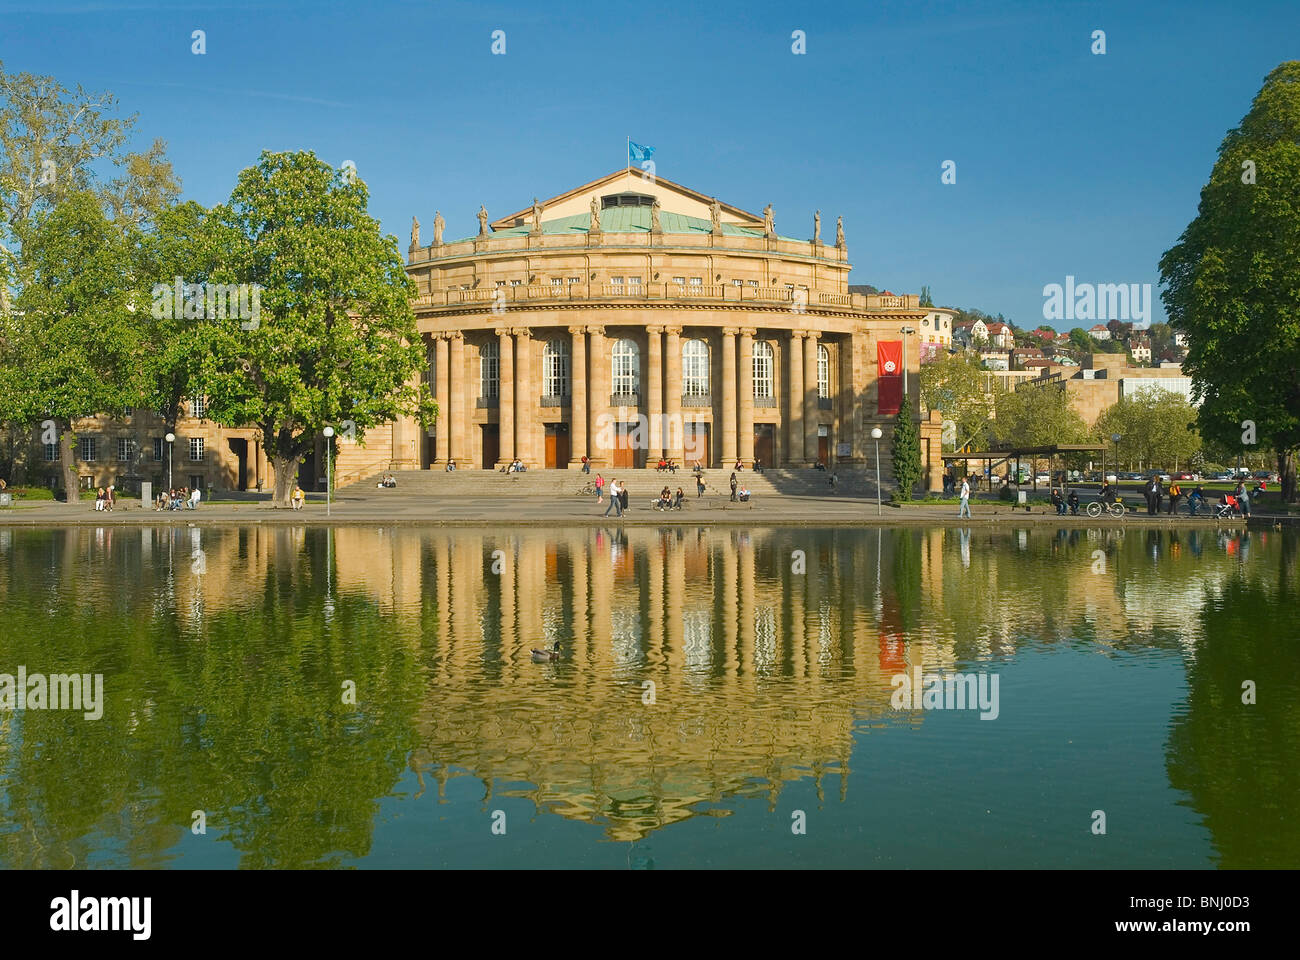 La ciudad de Stuttgart Alemania Baden-Wurttemberg teatro clásico Grosses Haus estanque parque reflexión primavera persona, Foto de stock